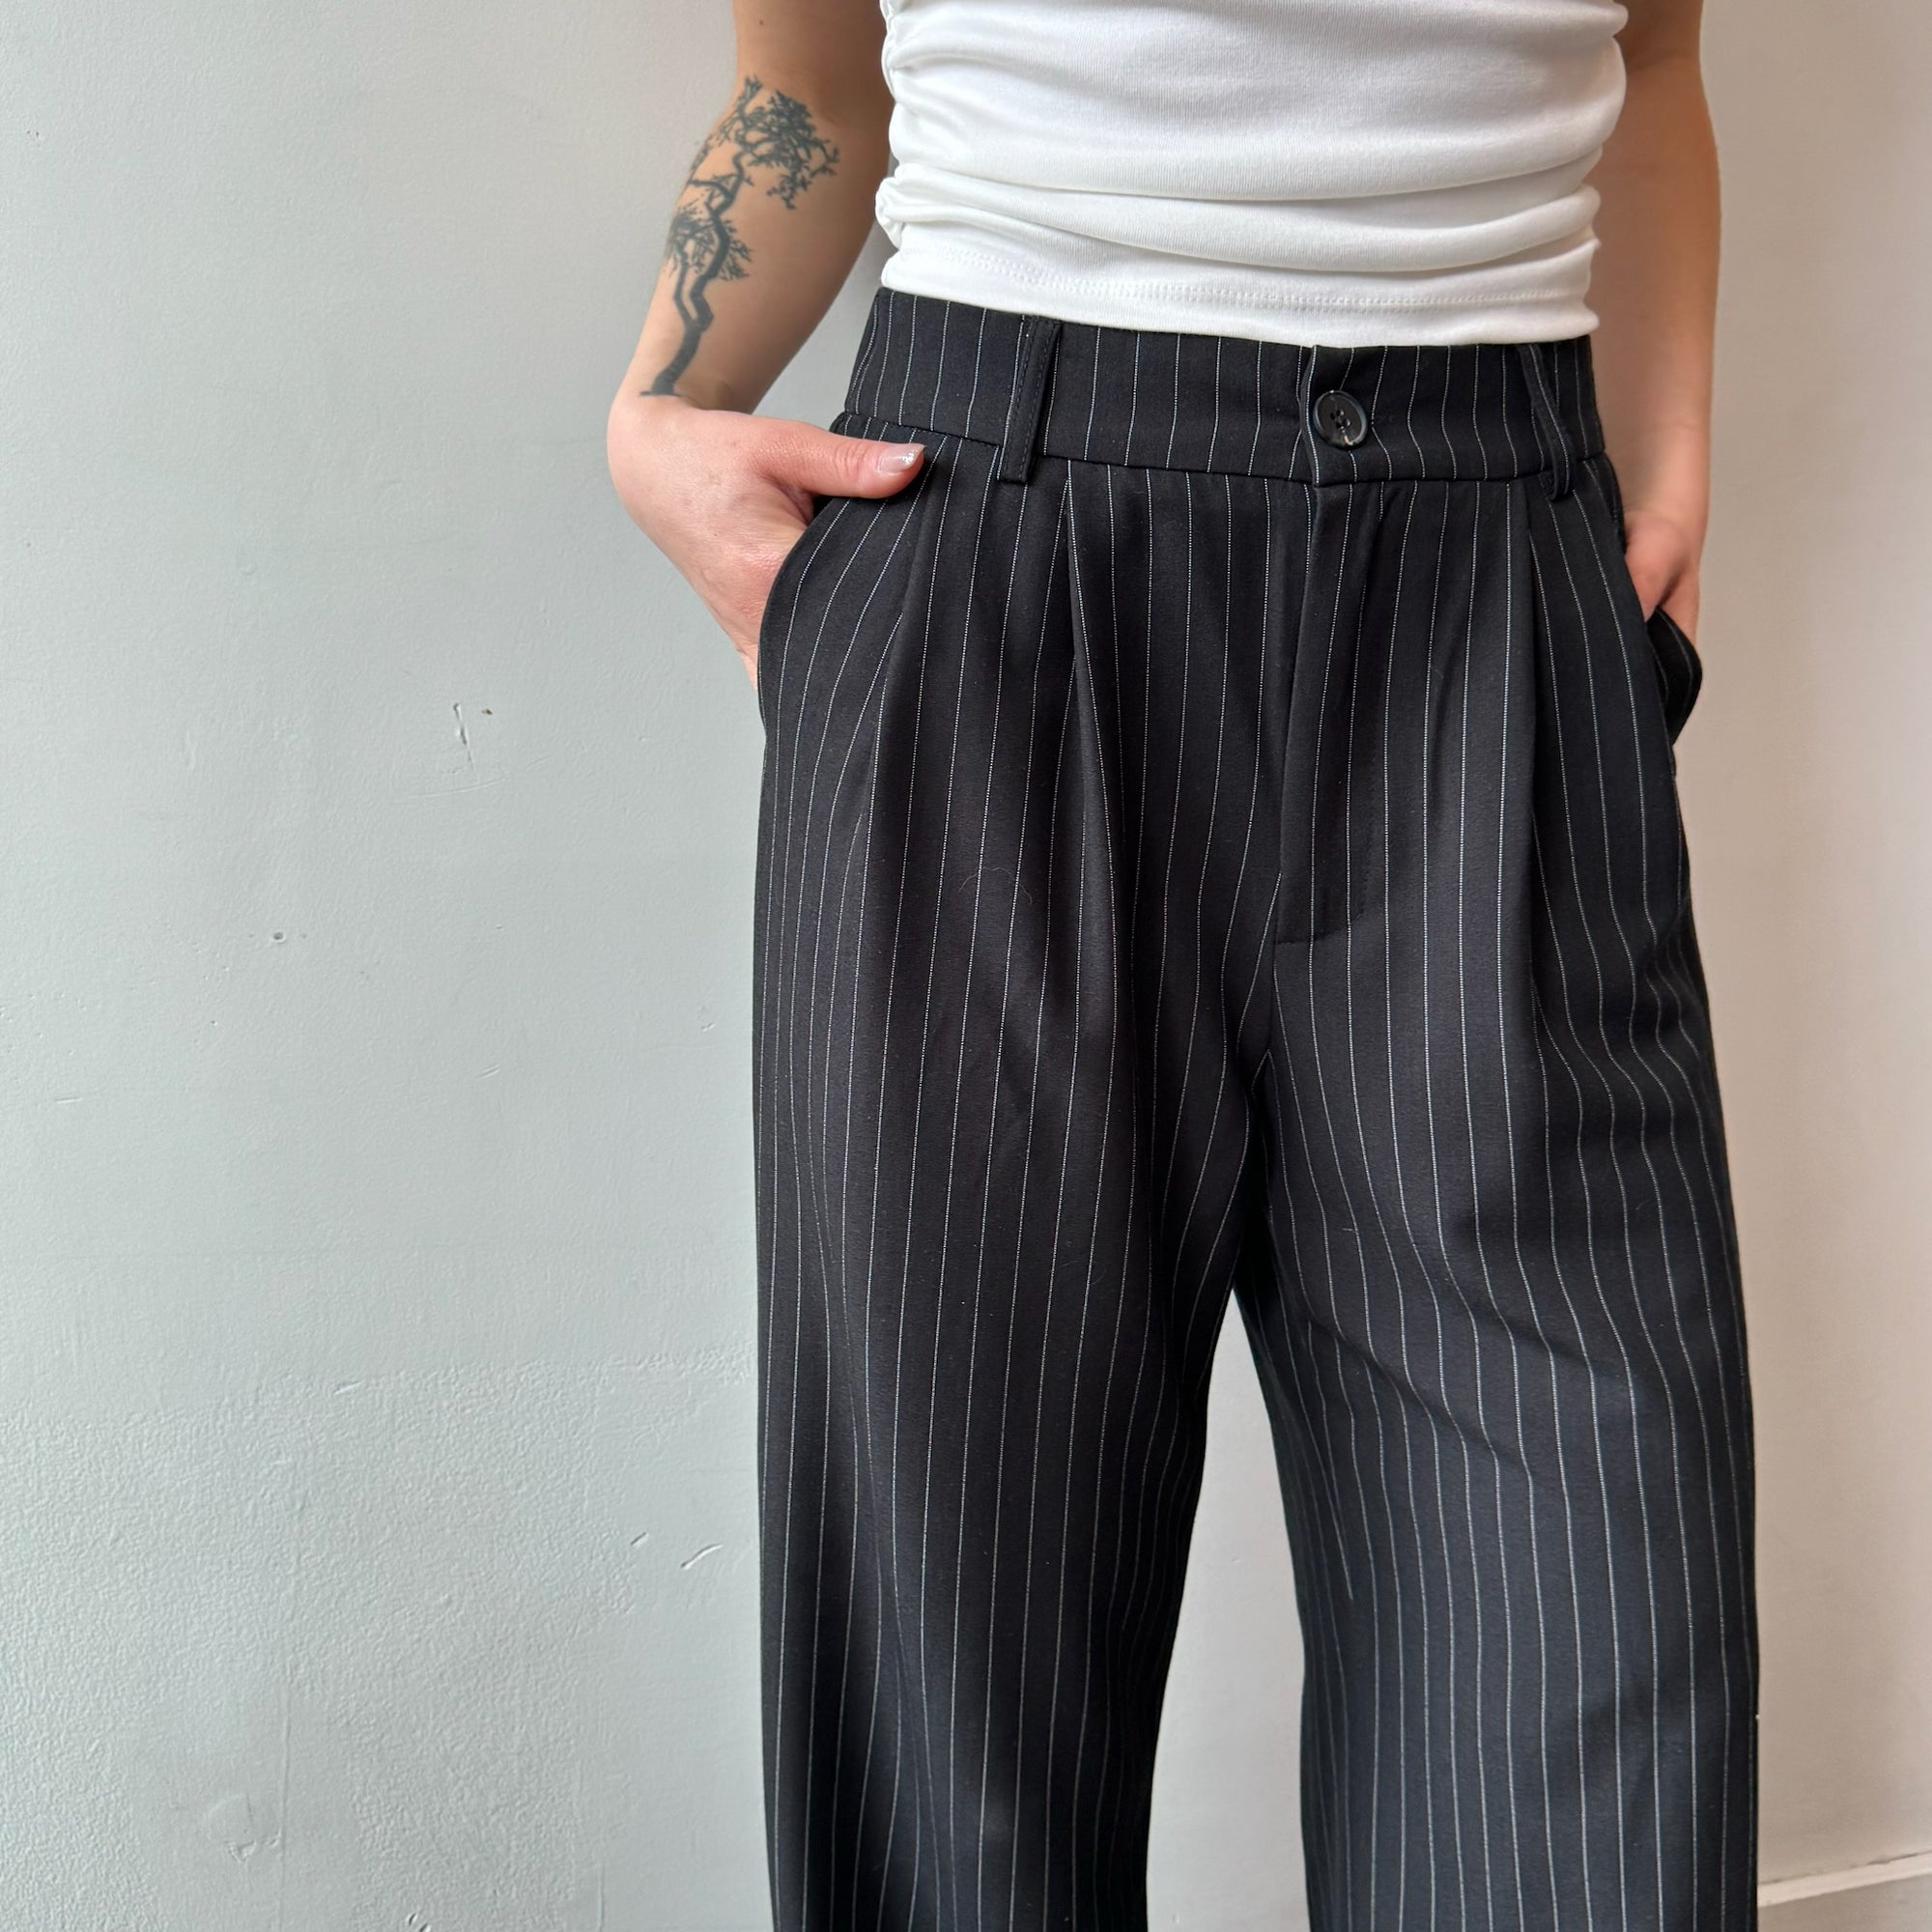 Body Heat Map Tie Dye Streetwear Trousers Multicolor Punk Hippy High Waist  Pants